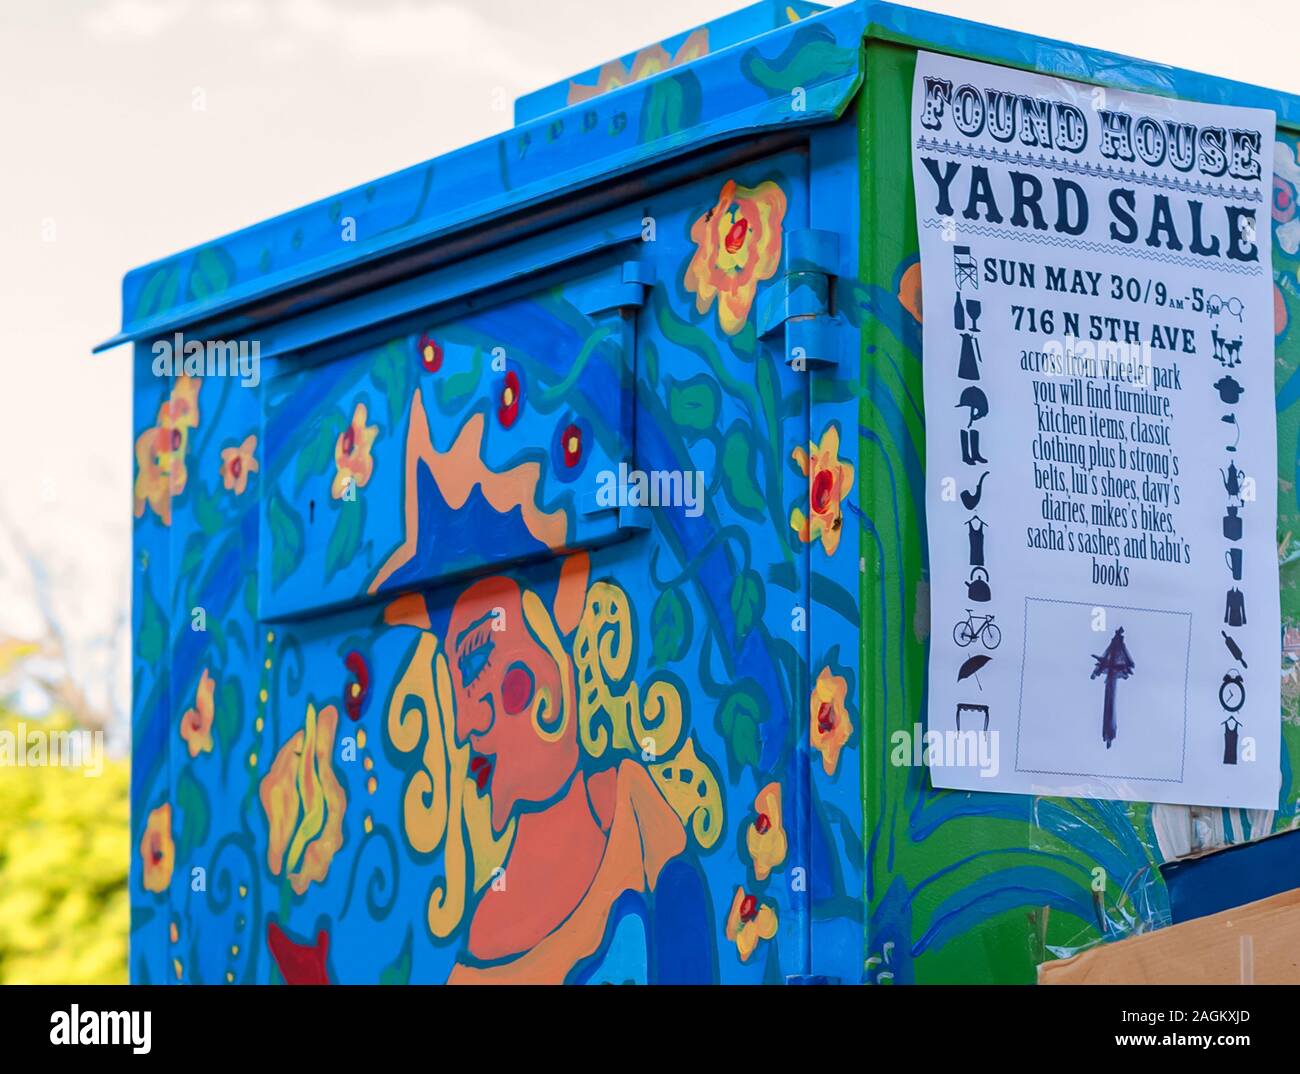 Eine Nahaufnahme von einem Yard Sale Schild angebracht auf ein Wandbild outdoor Utility/elektrische Feld in Ann Arbor, Michigan geschmückt. Stockfoto